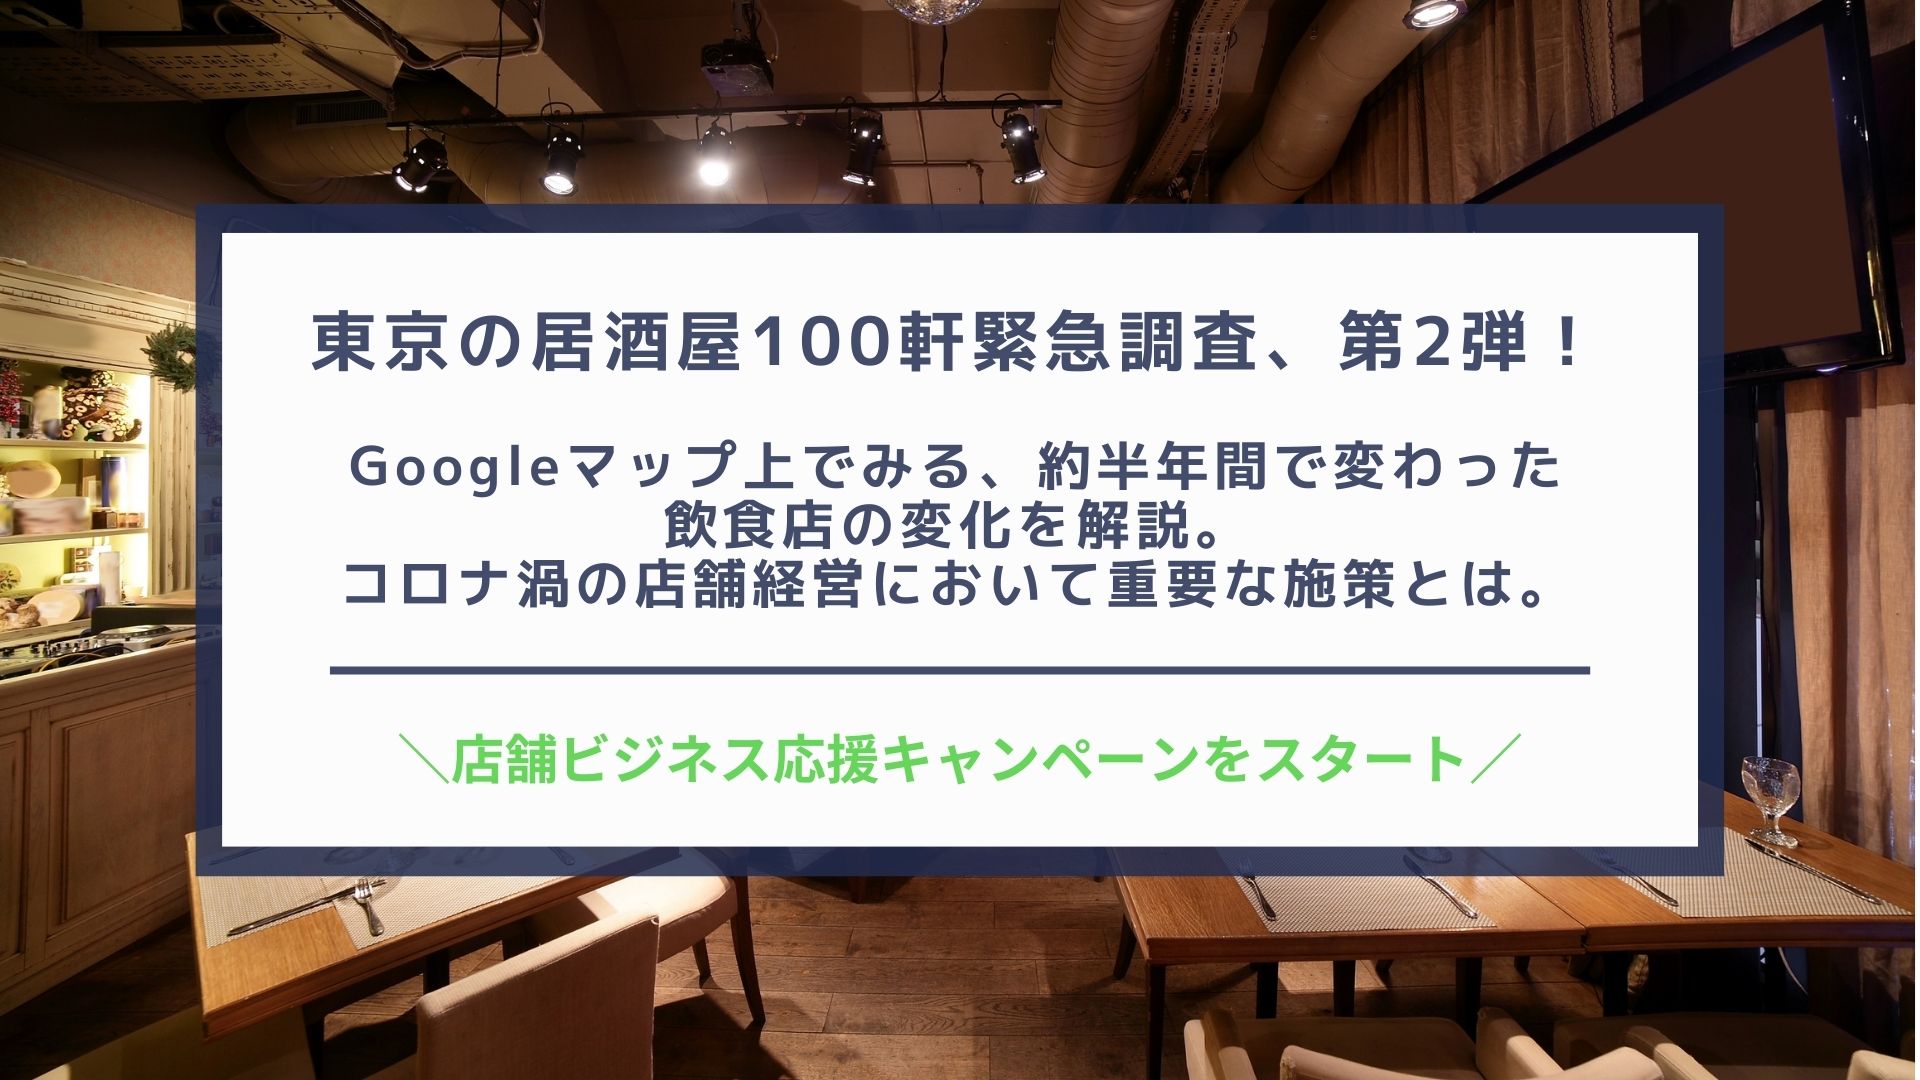 東京の居酒屋100軒緊急調査 第2弾 Googleマップ上でみる 約半年間で変わった 飲食店の変化を解説 コロナ渦の店舗経営において重要な施策とは 株式会社エフェクチュアルのプレスリリース